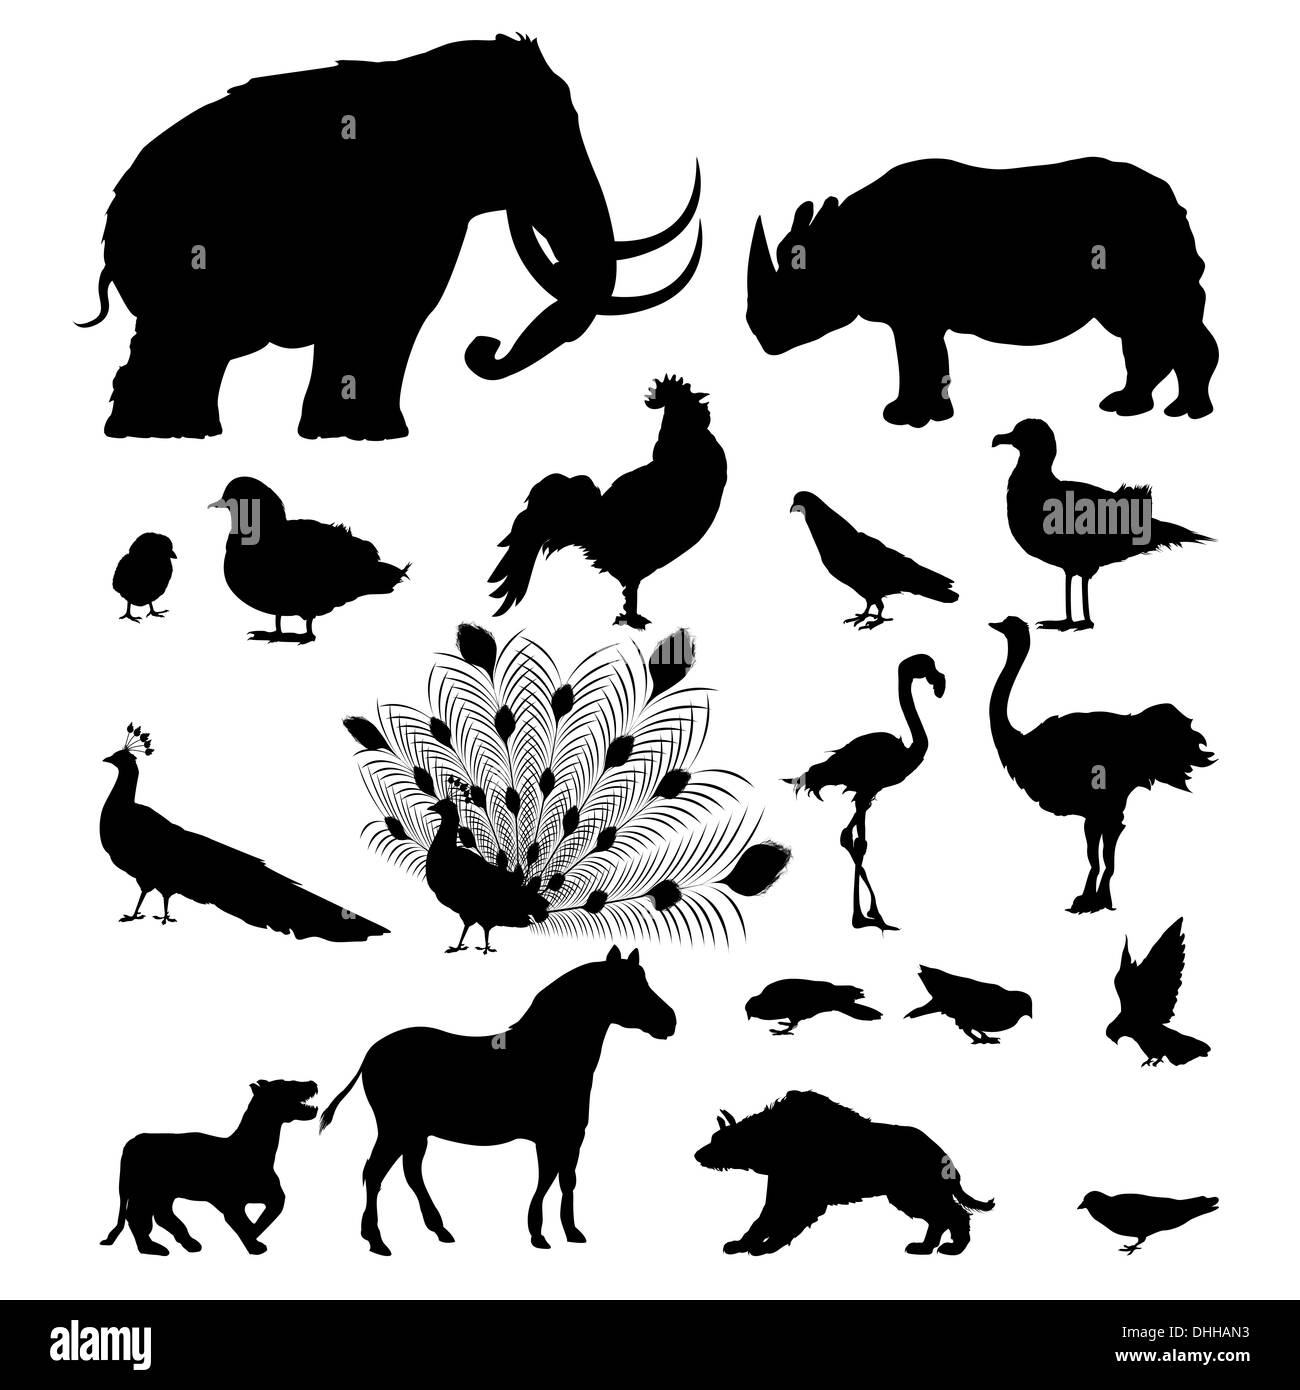 Wild animal silhouettes Stock Photo